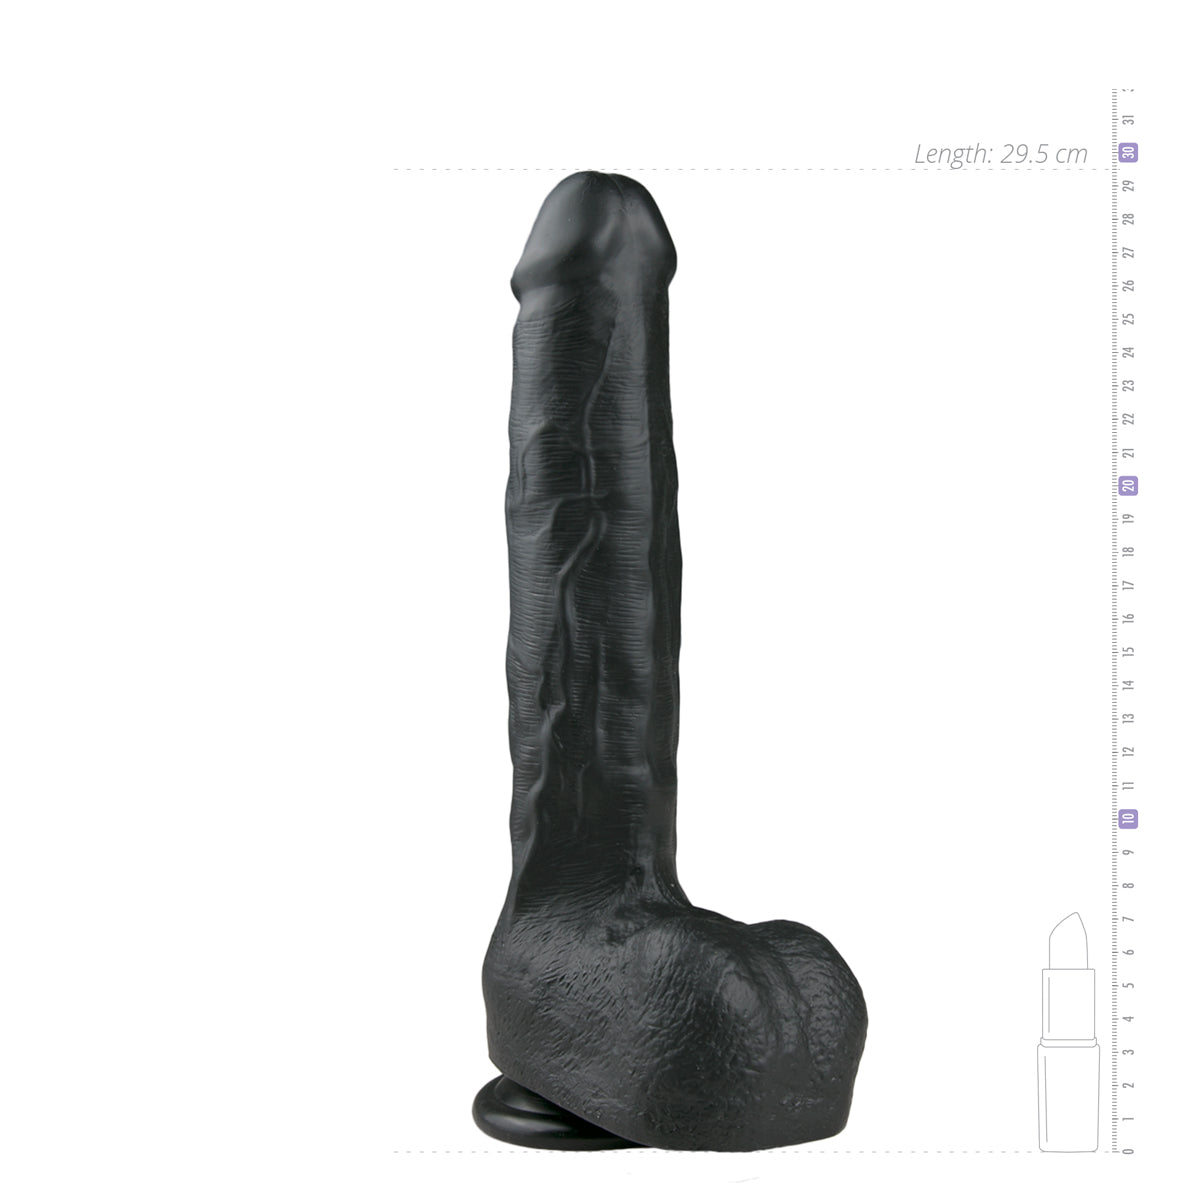 Realistische, zwarte, flexibele dildo van 29,5 cm met balzak van het merk EasyToys. Dildo's van EasyToys koop je bij Flavourez